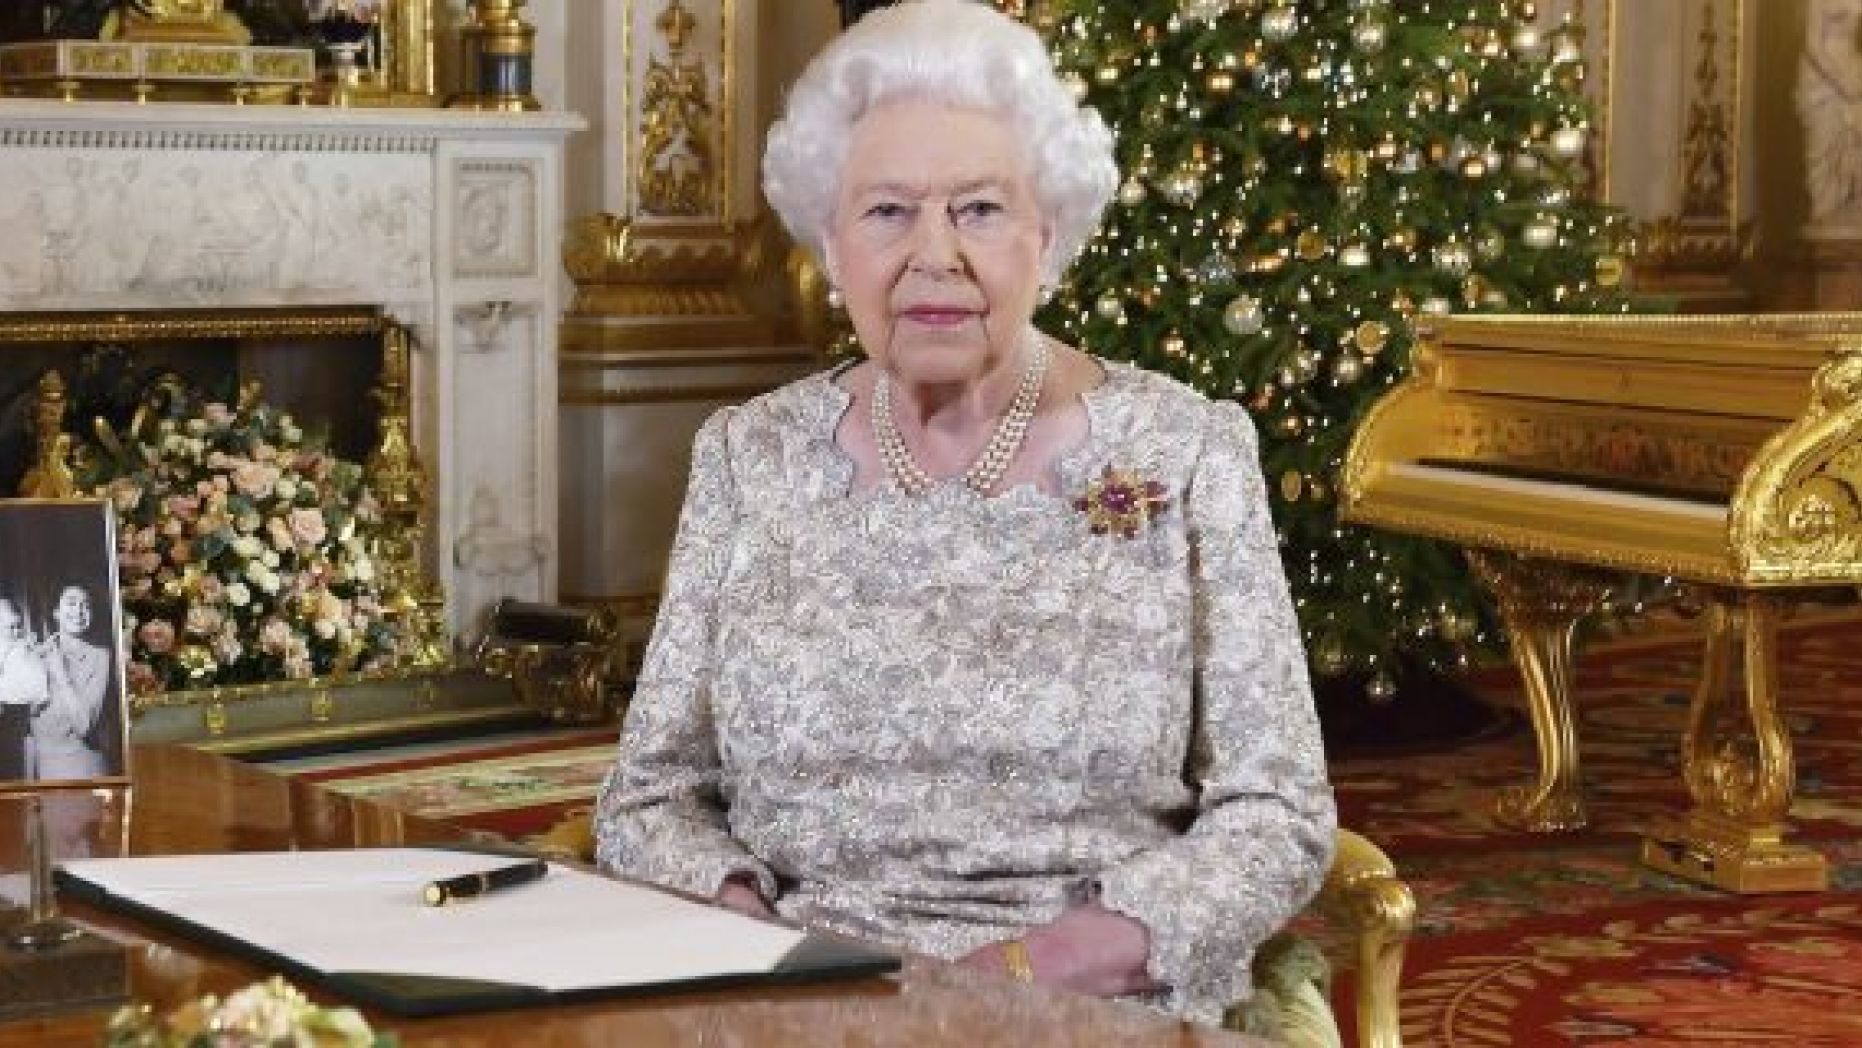 Ce détail choquant dans la vidéo de Noël de la reine Elizabeth II